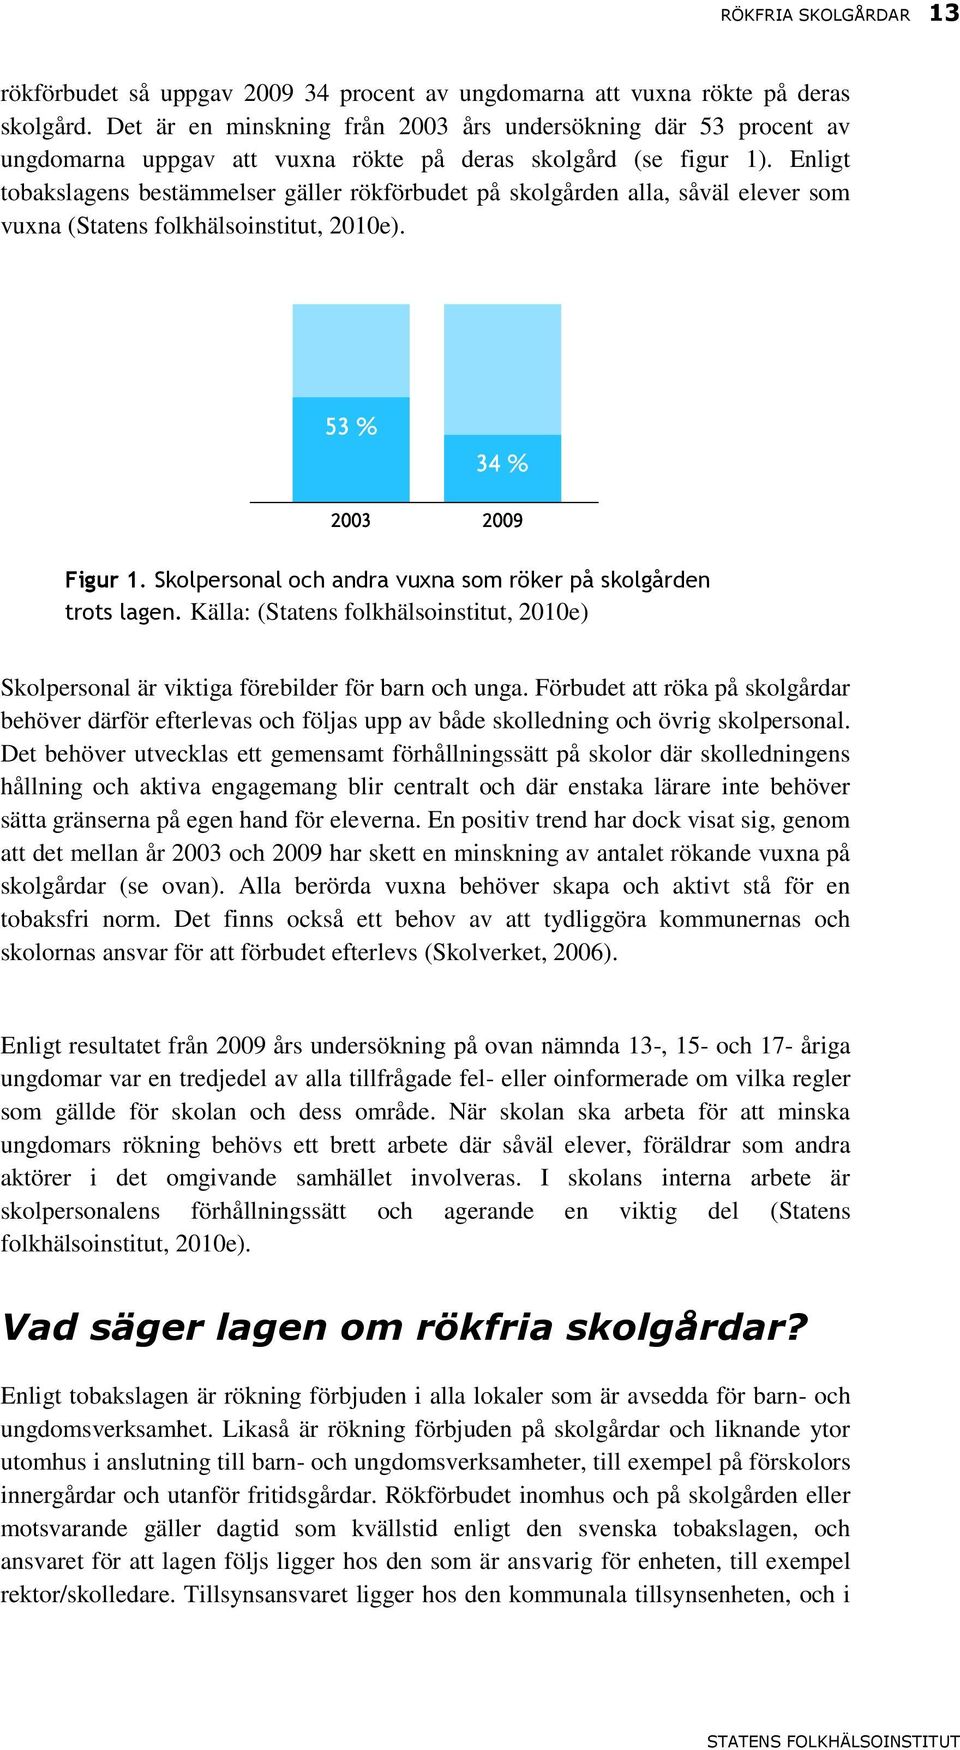 Enligt tobakslagens bestämmelser gäller rökförbudet på skolgården alla, såväl elever som vuxna (Statens folkhälsoinstitut, 2010e). Figur 1.